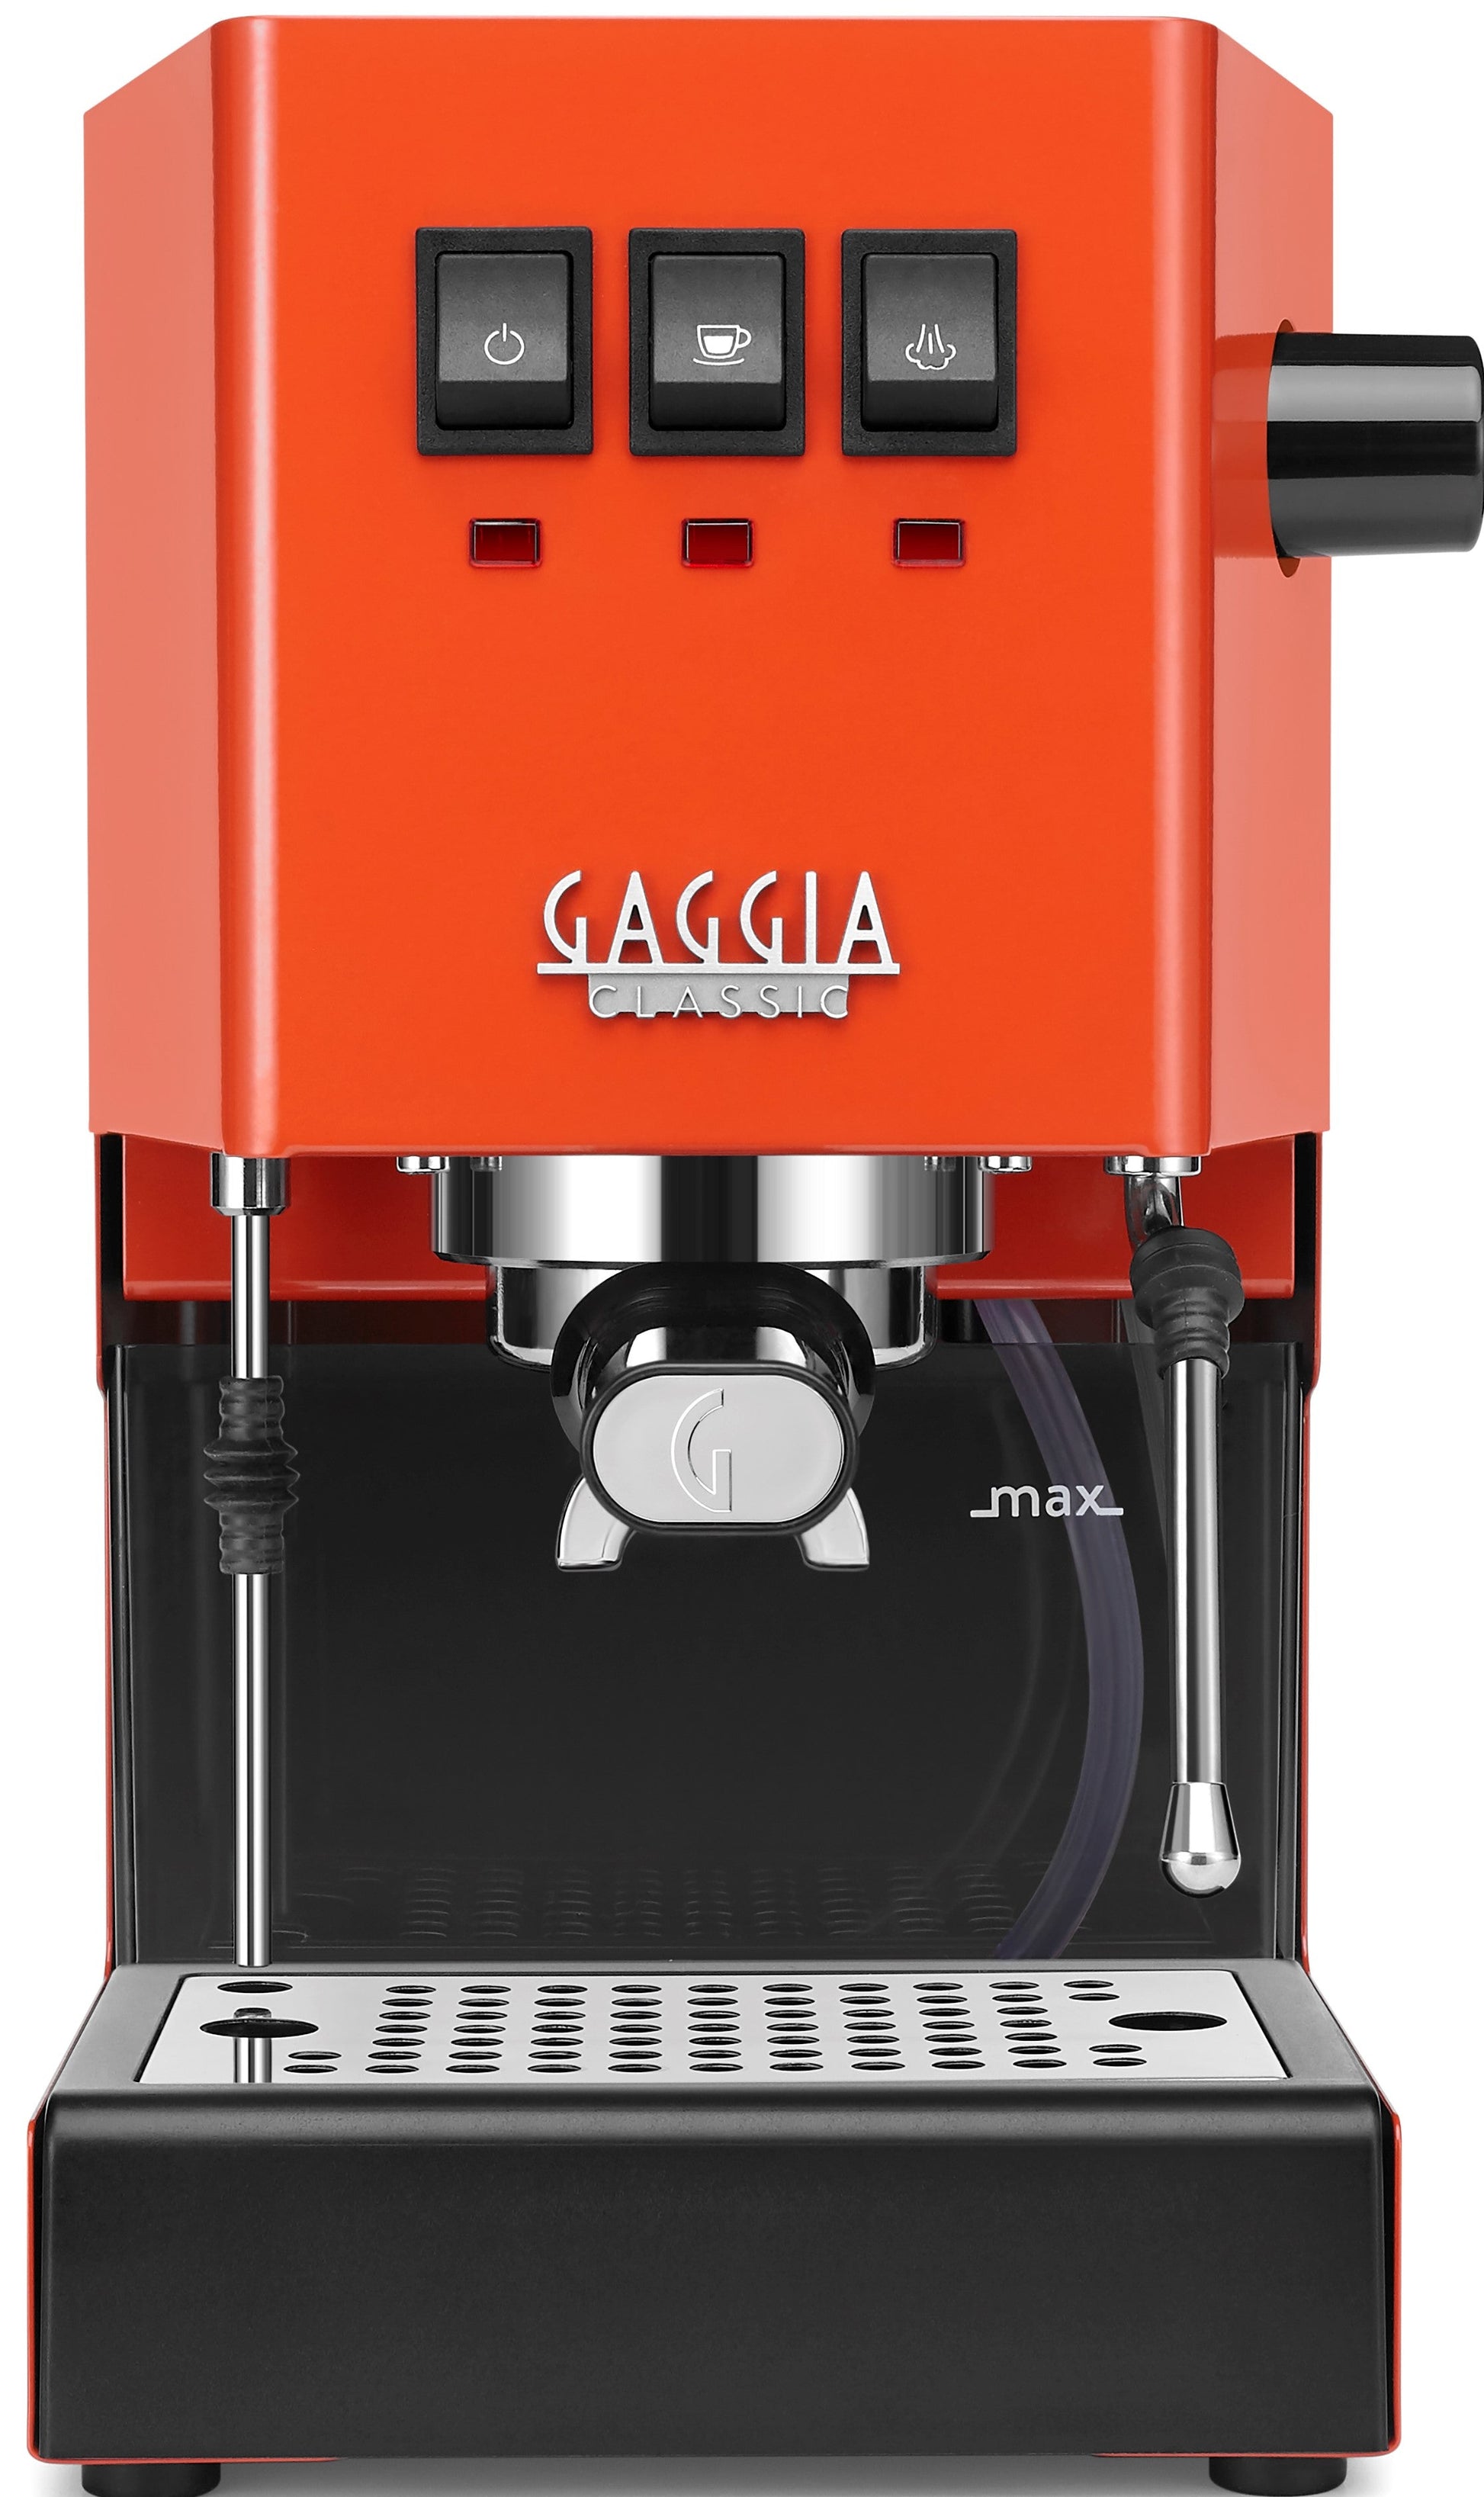 Gaggia revamps its Classic espresso machine with new Evo model